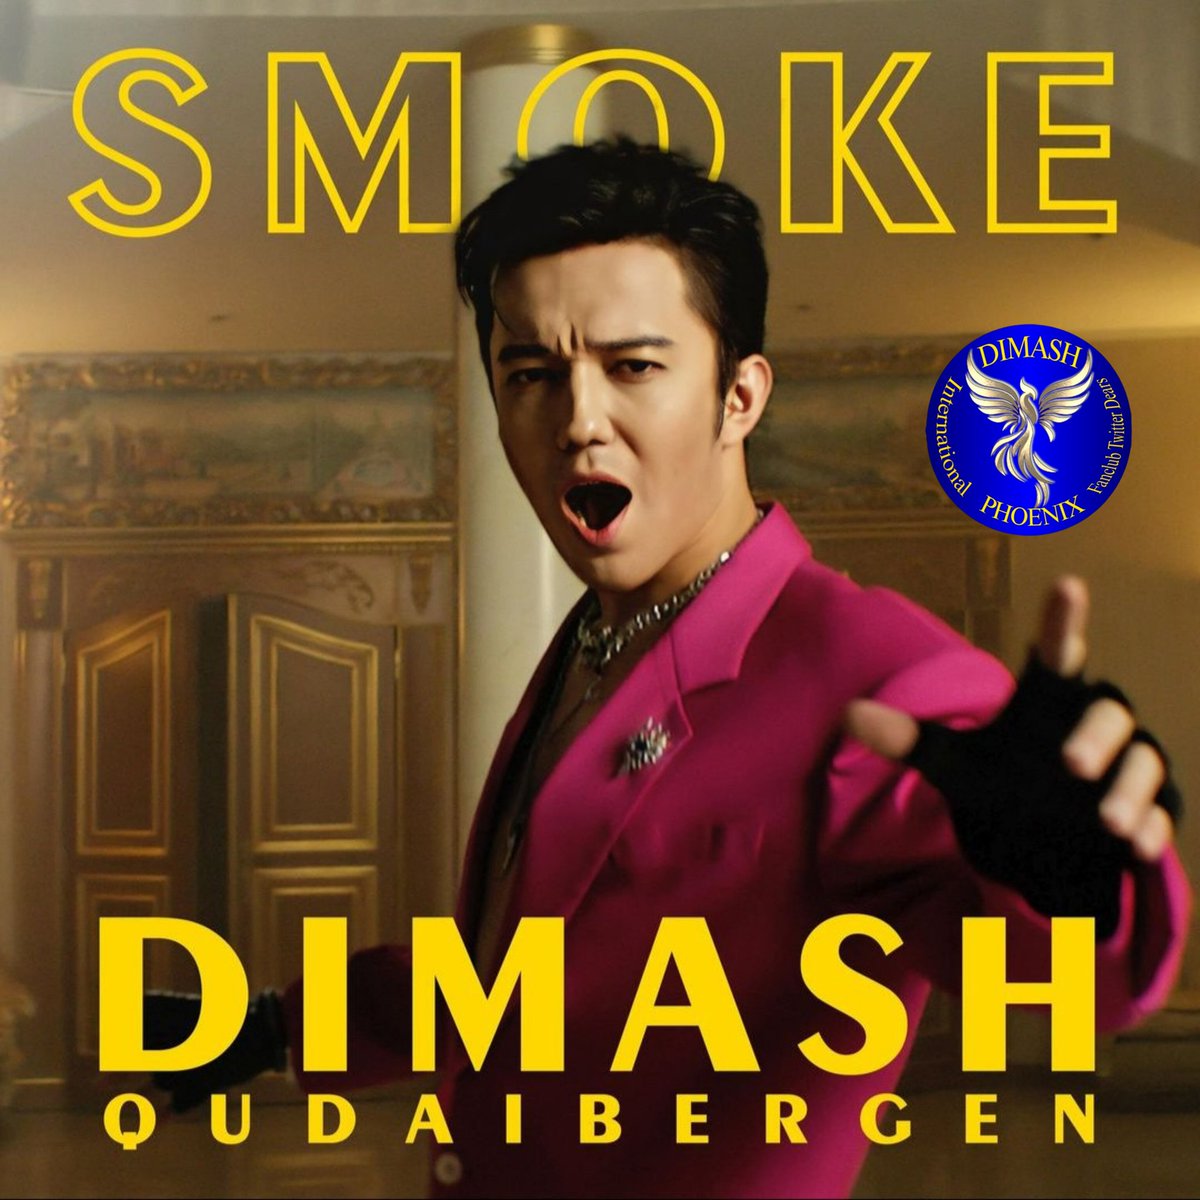 @dimash_official Поздравляю с релизом, песня классная!!! Слушаю и слушаю!🔥🤩 MUSIC OF LIFE #SmokeByDimash #DimashConcertBudapest